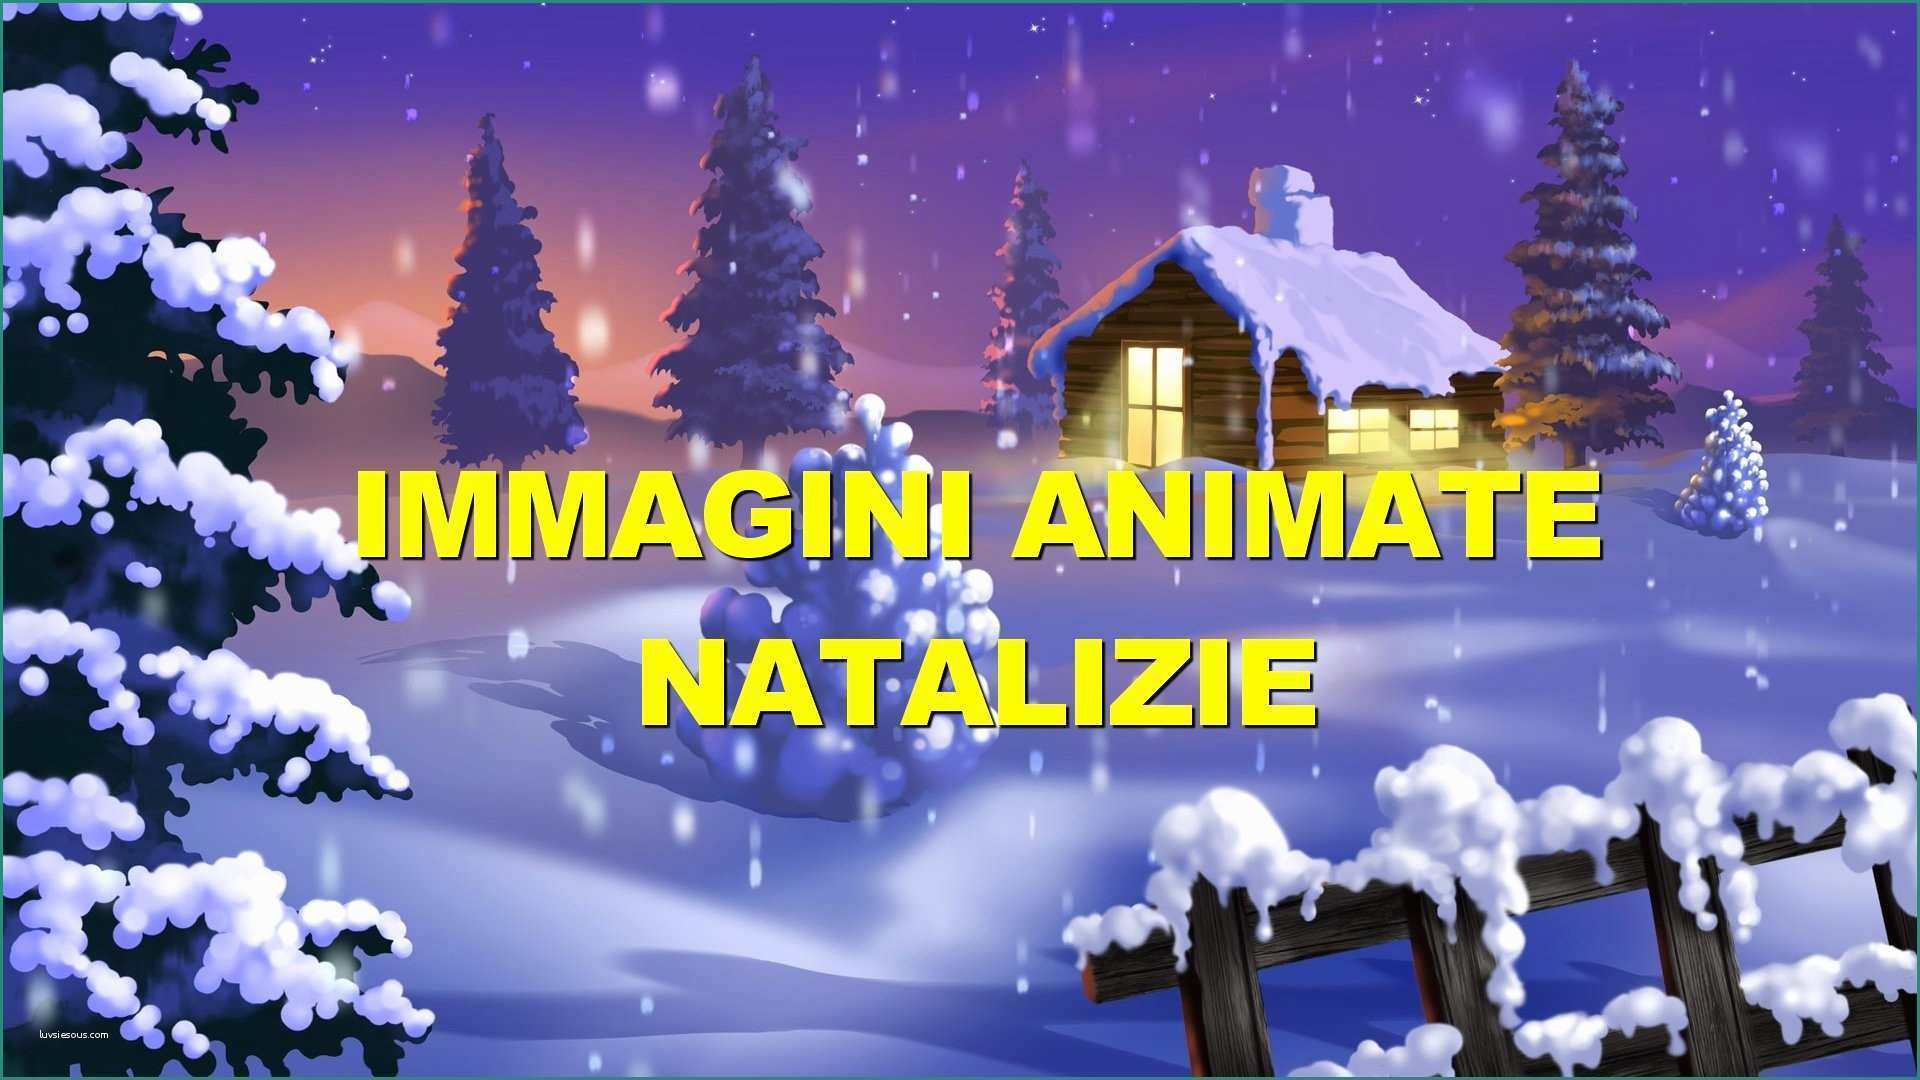 Immagini Disney Da Scaricare E Le Animate Di Natale Pi¹ Belle Le Trovi Qui â